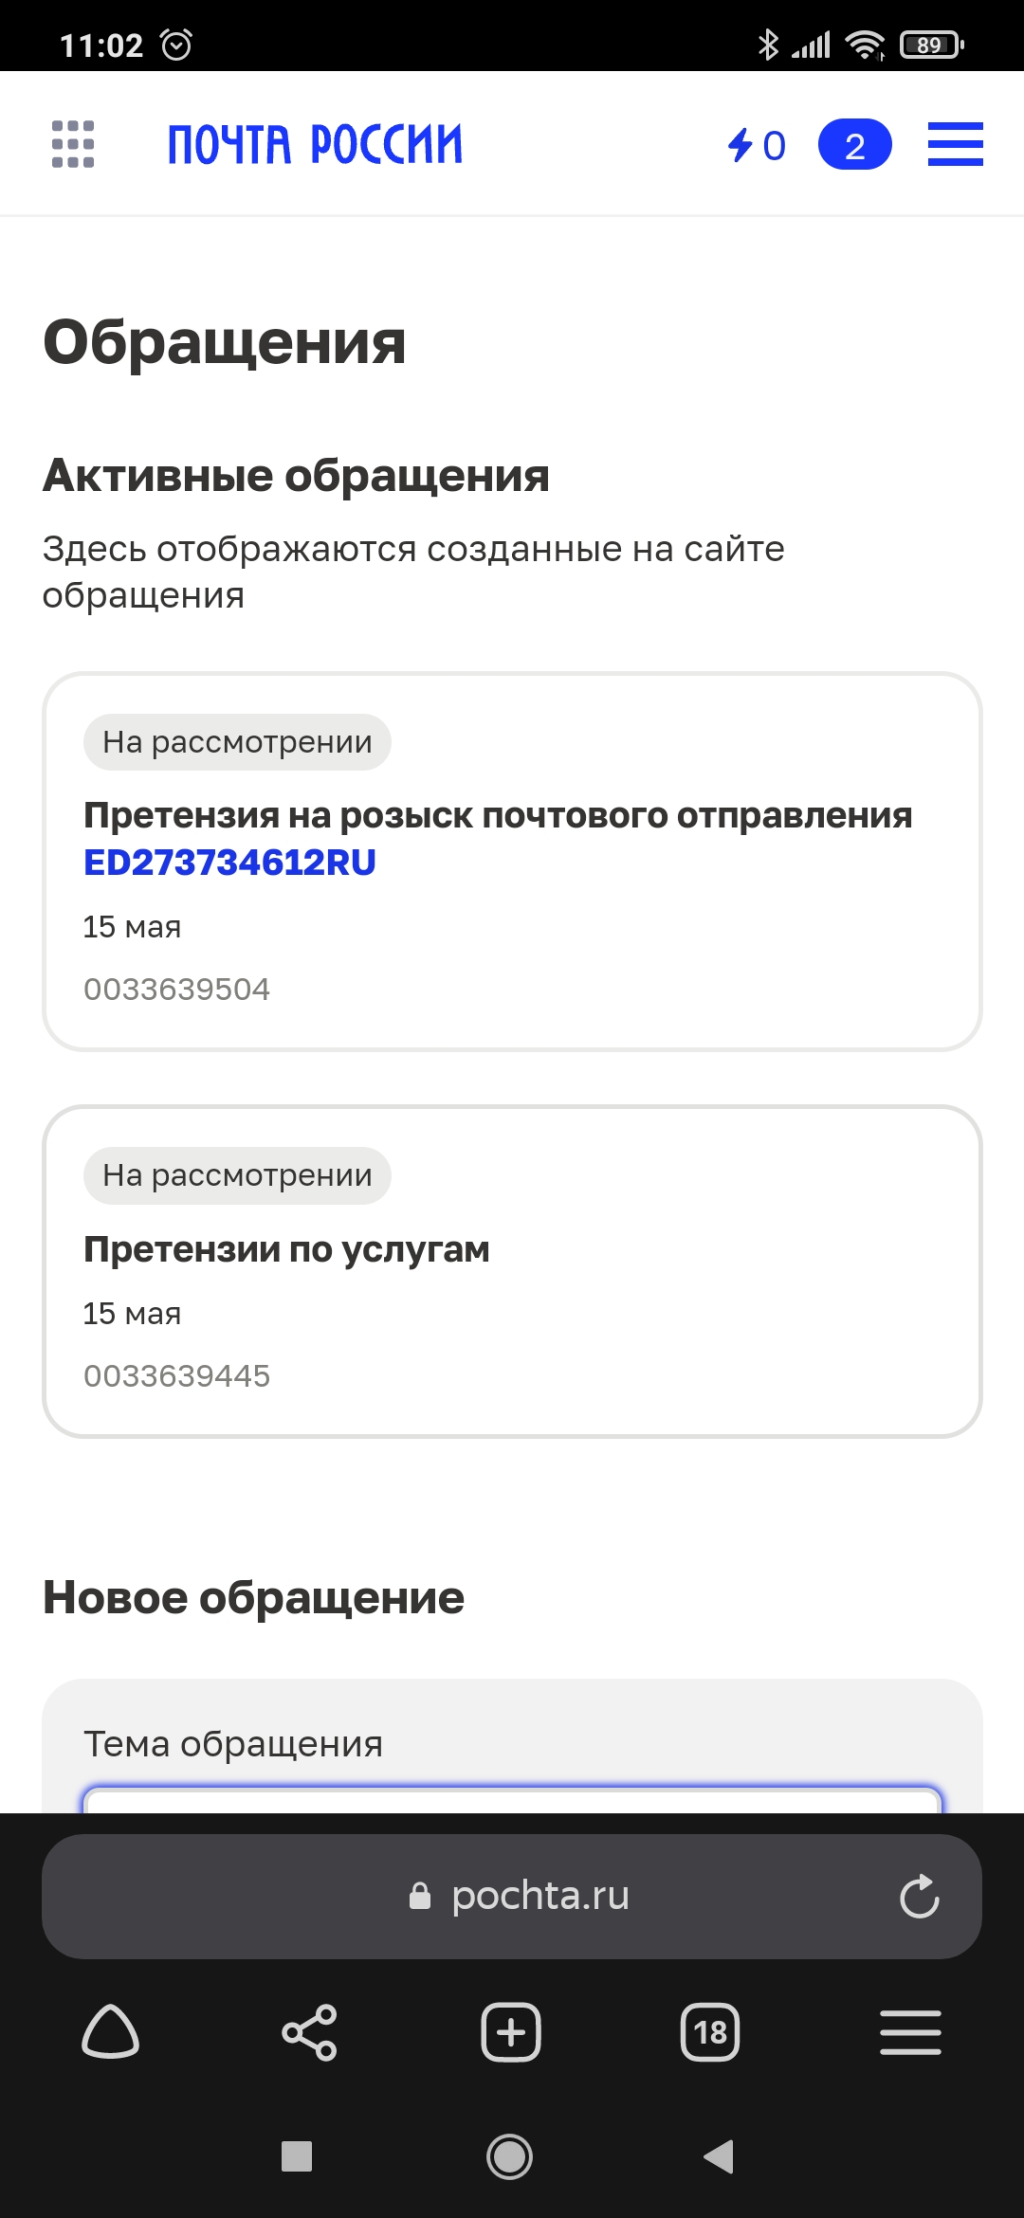 EMS Russian Рost - Я так и не получила посылку!